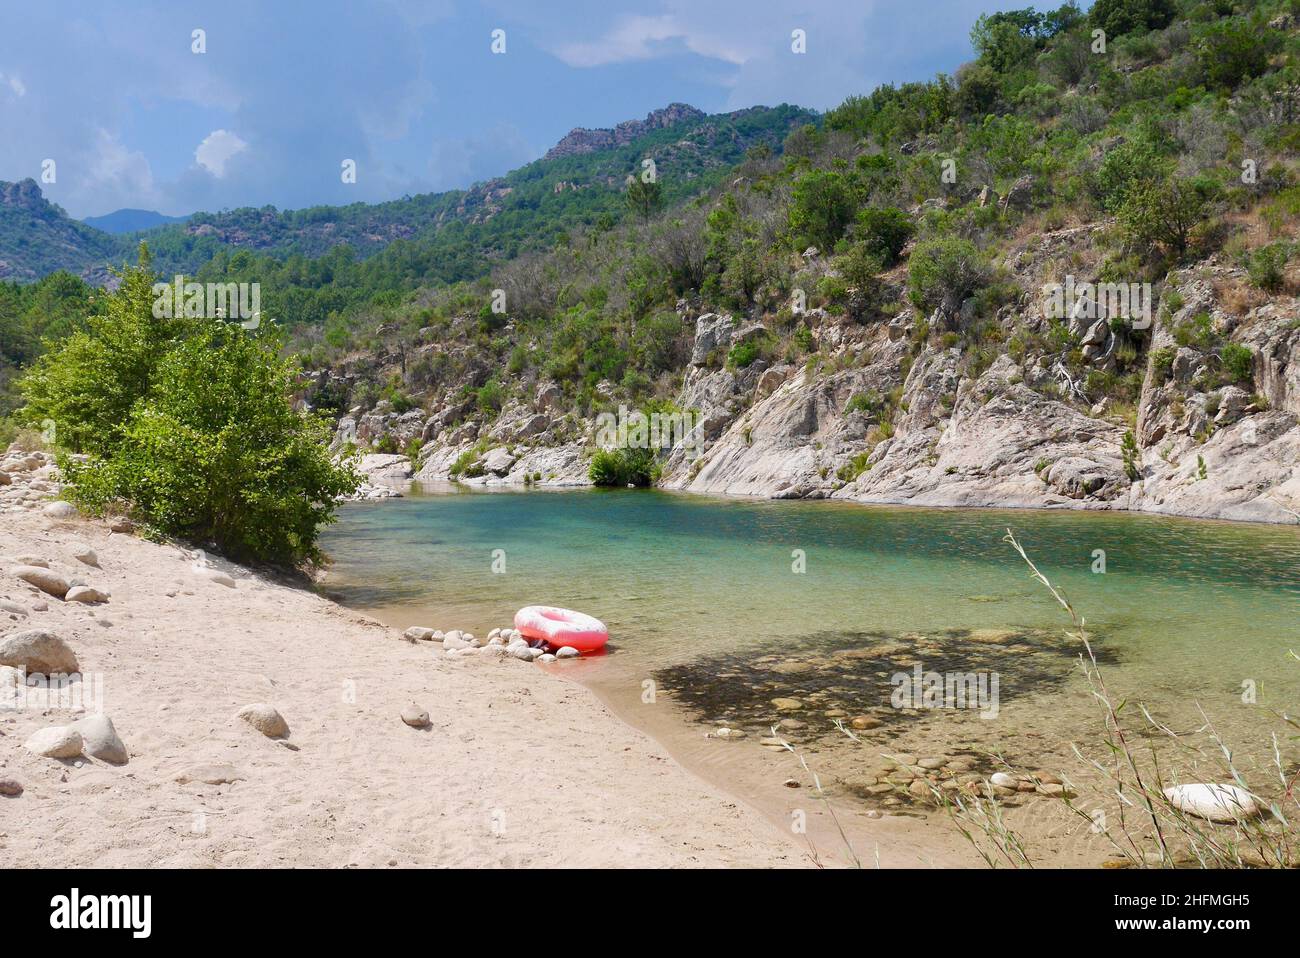 Anneau en caoutchouc rose à la rivière Solenzara avec des eaux turquoise et des plages de sable au pied des sommets de Bavella en Corse du Sud, France.Phot de haute qualité Banque D'Images